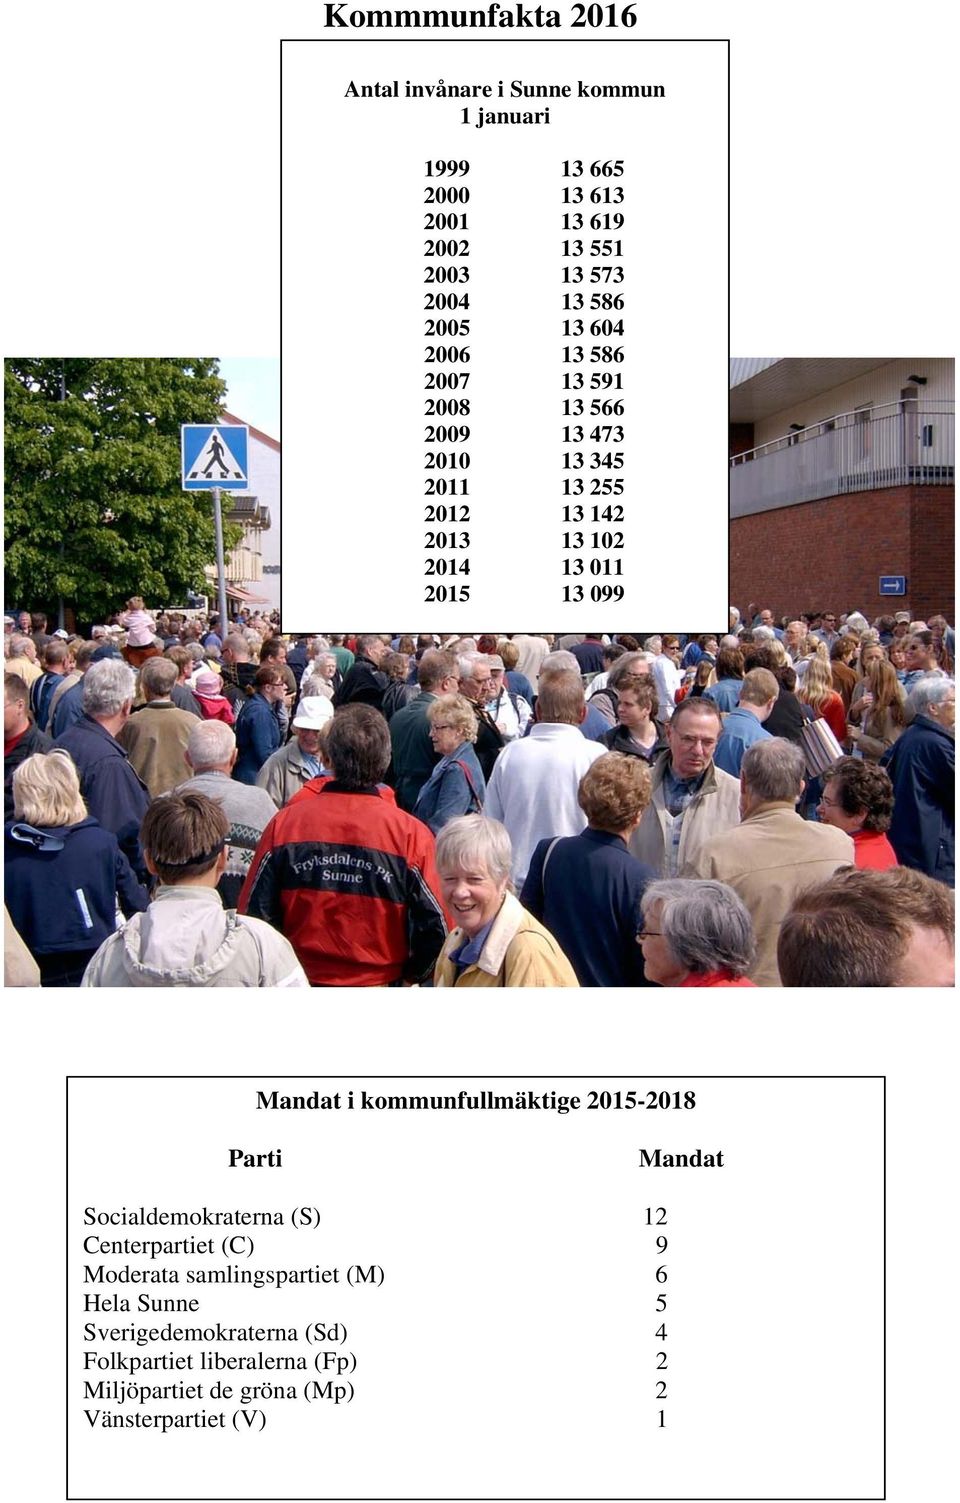 011 13 099 Mandat i kommunfullmäktige - Parti Mandat Socialdemokraterna (S) 12 Centerpartiet (C) 9 Moderata